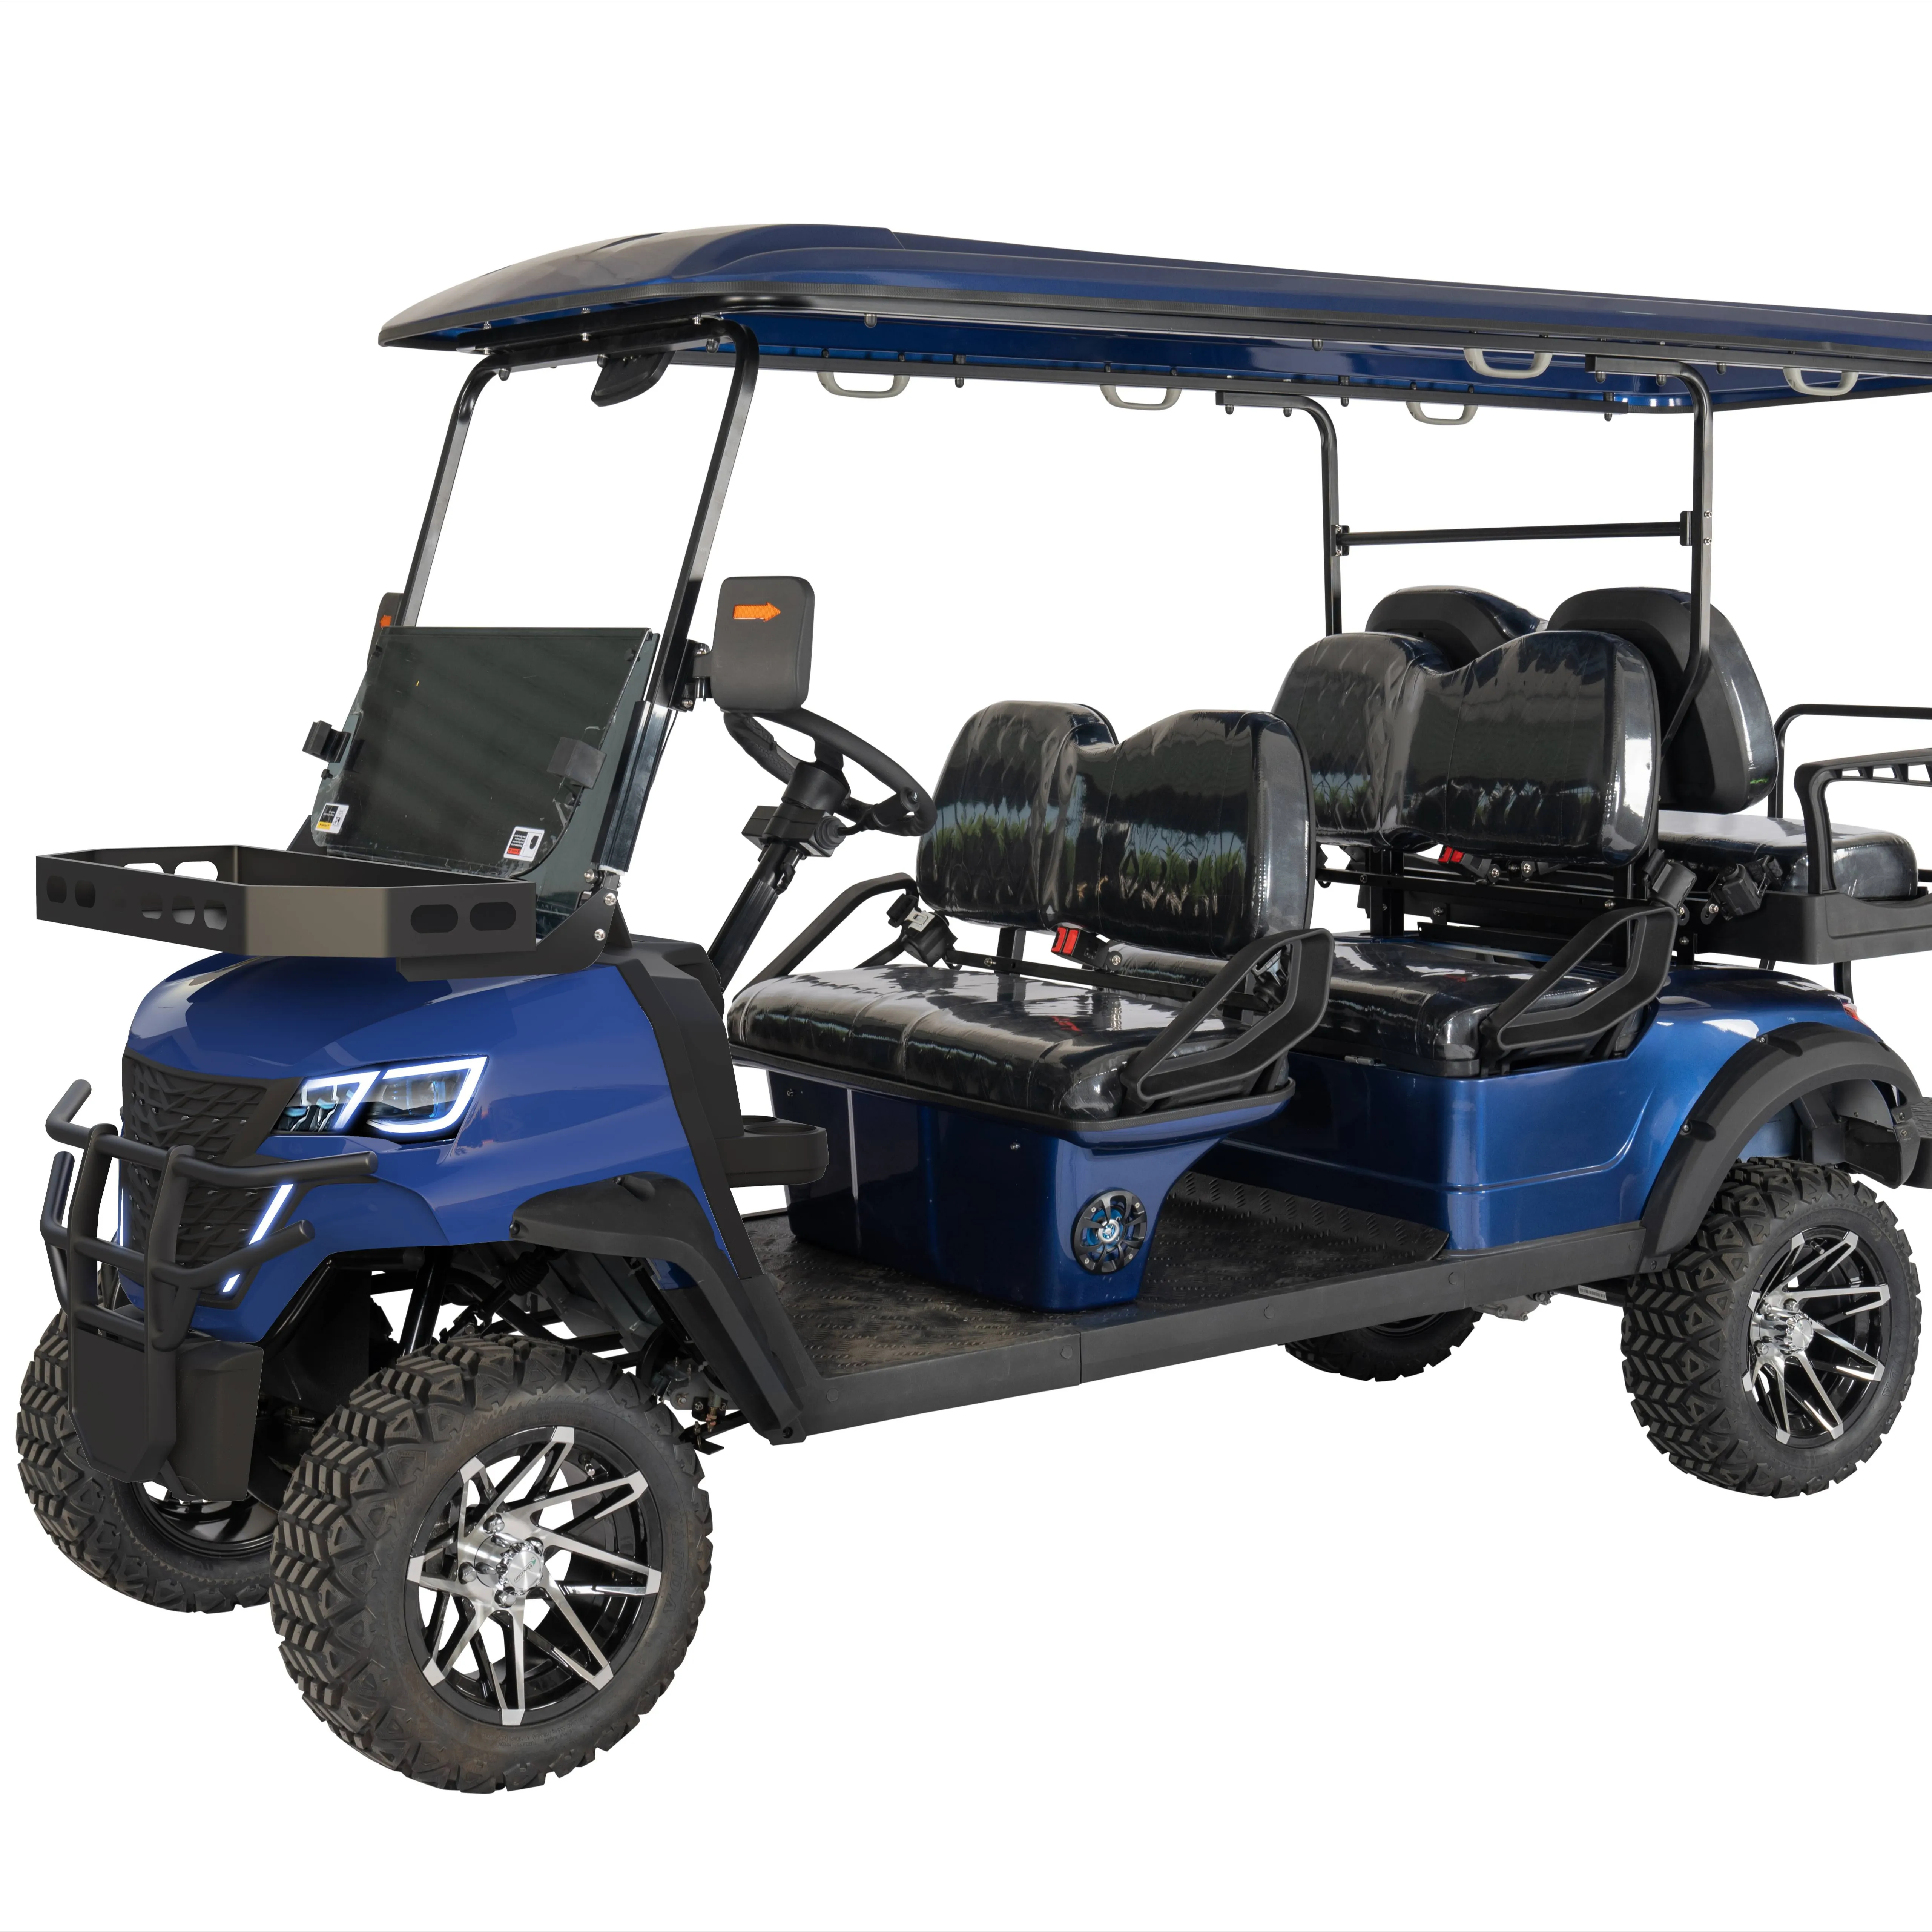 Carrito de golf eléctrico todoterreno, carrito de golf con marco de aluminio, 4 + 2 plazas, 72V